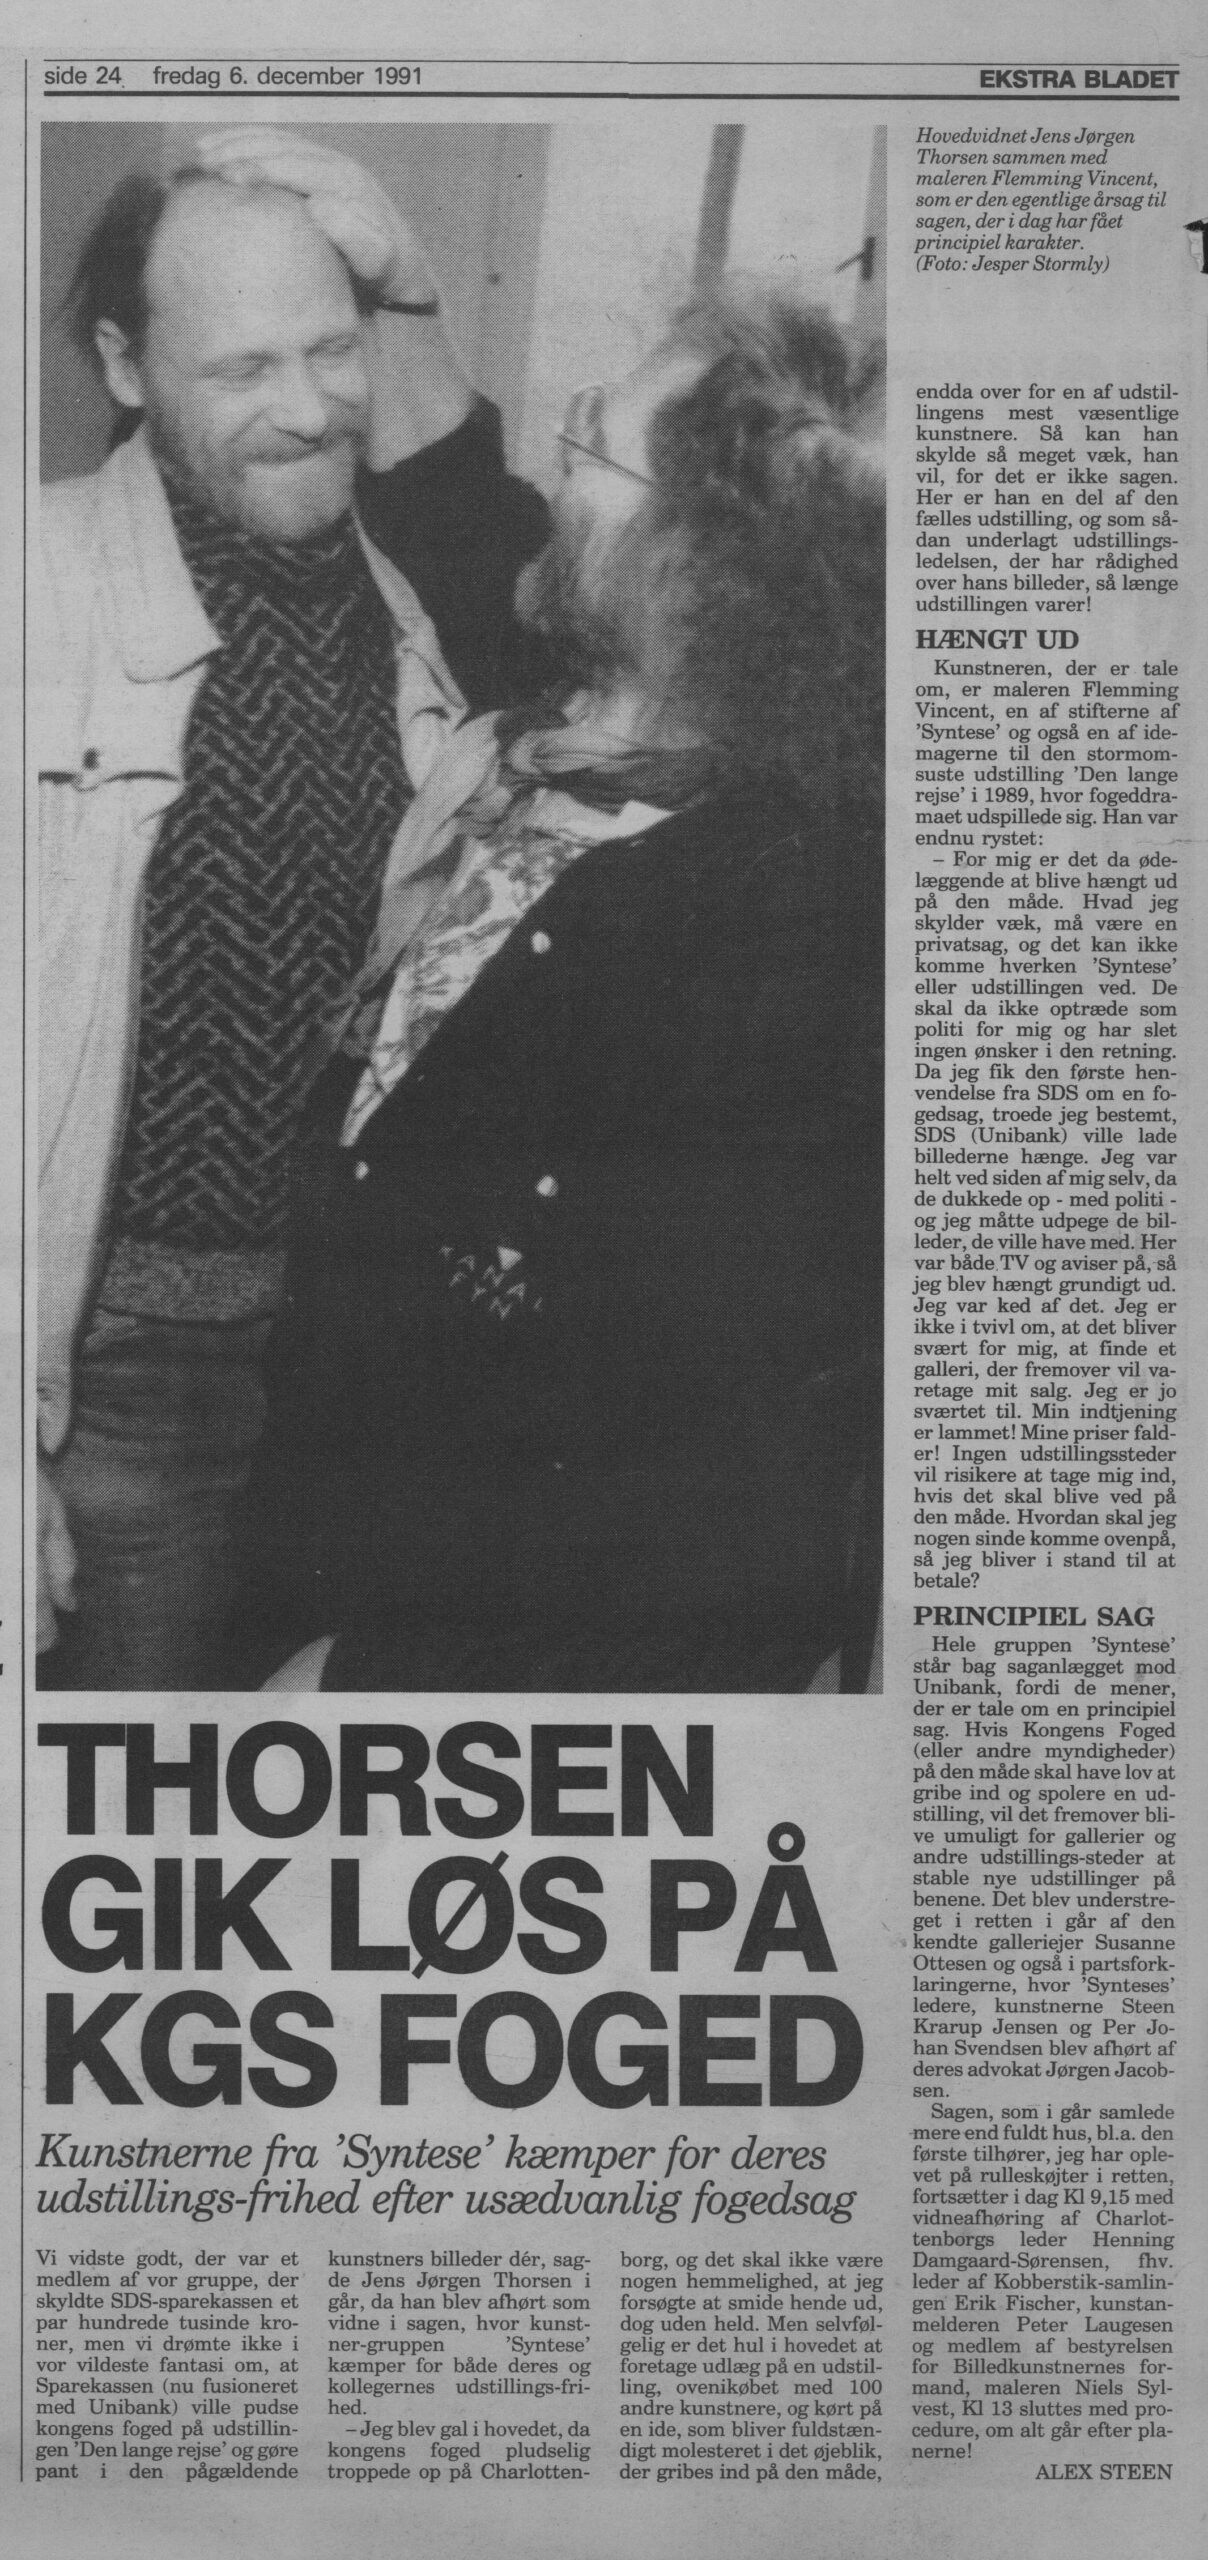 Thorsen gik løs på Kgs Foged. Omtale (Retssag. Den lange rejse. Charlottenborg, København 1989). Alex Steen. Ekstra Bladet.